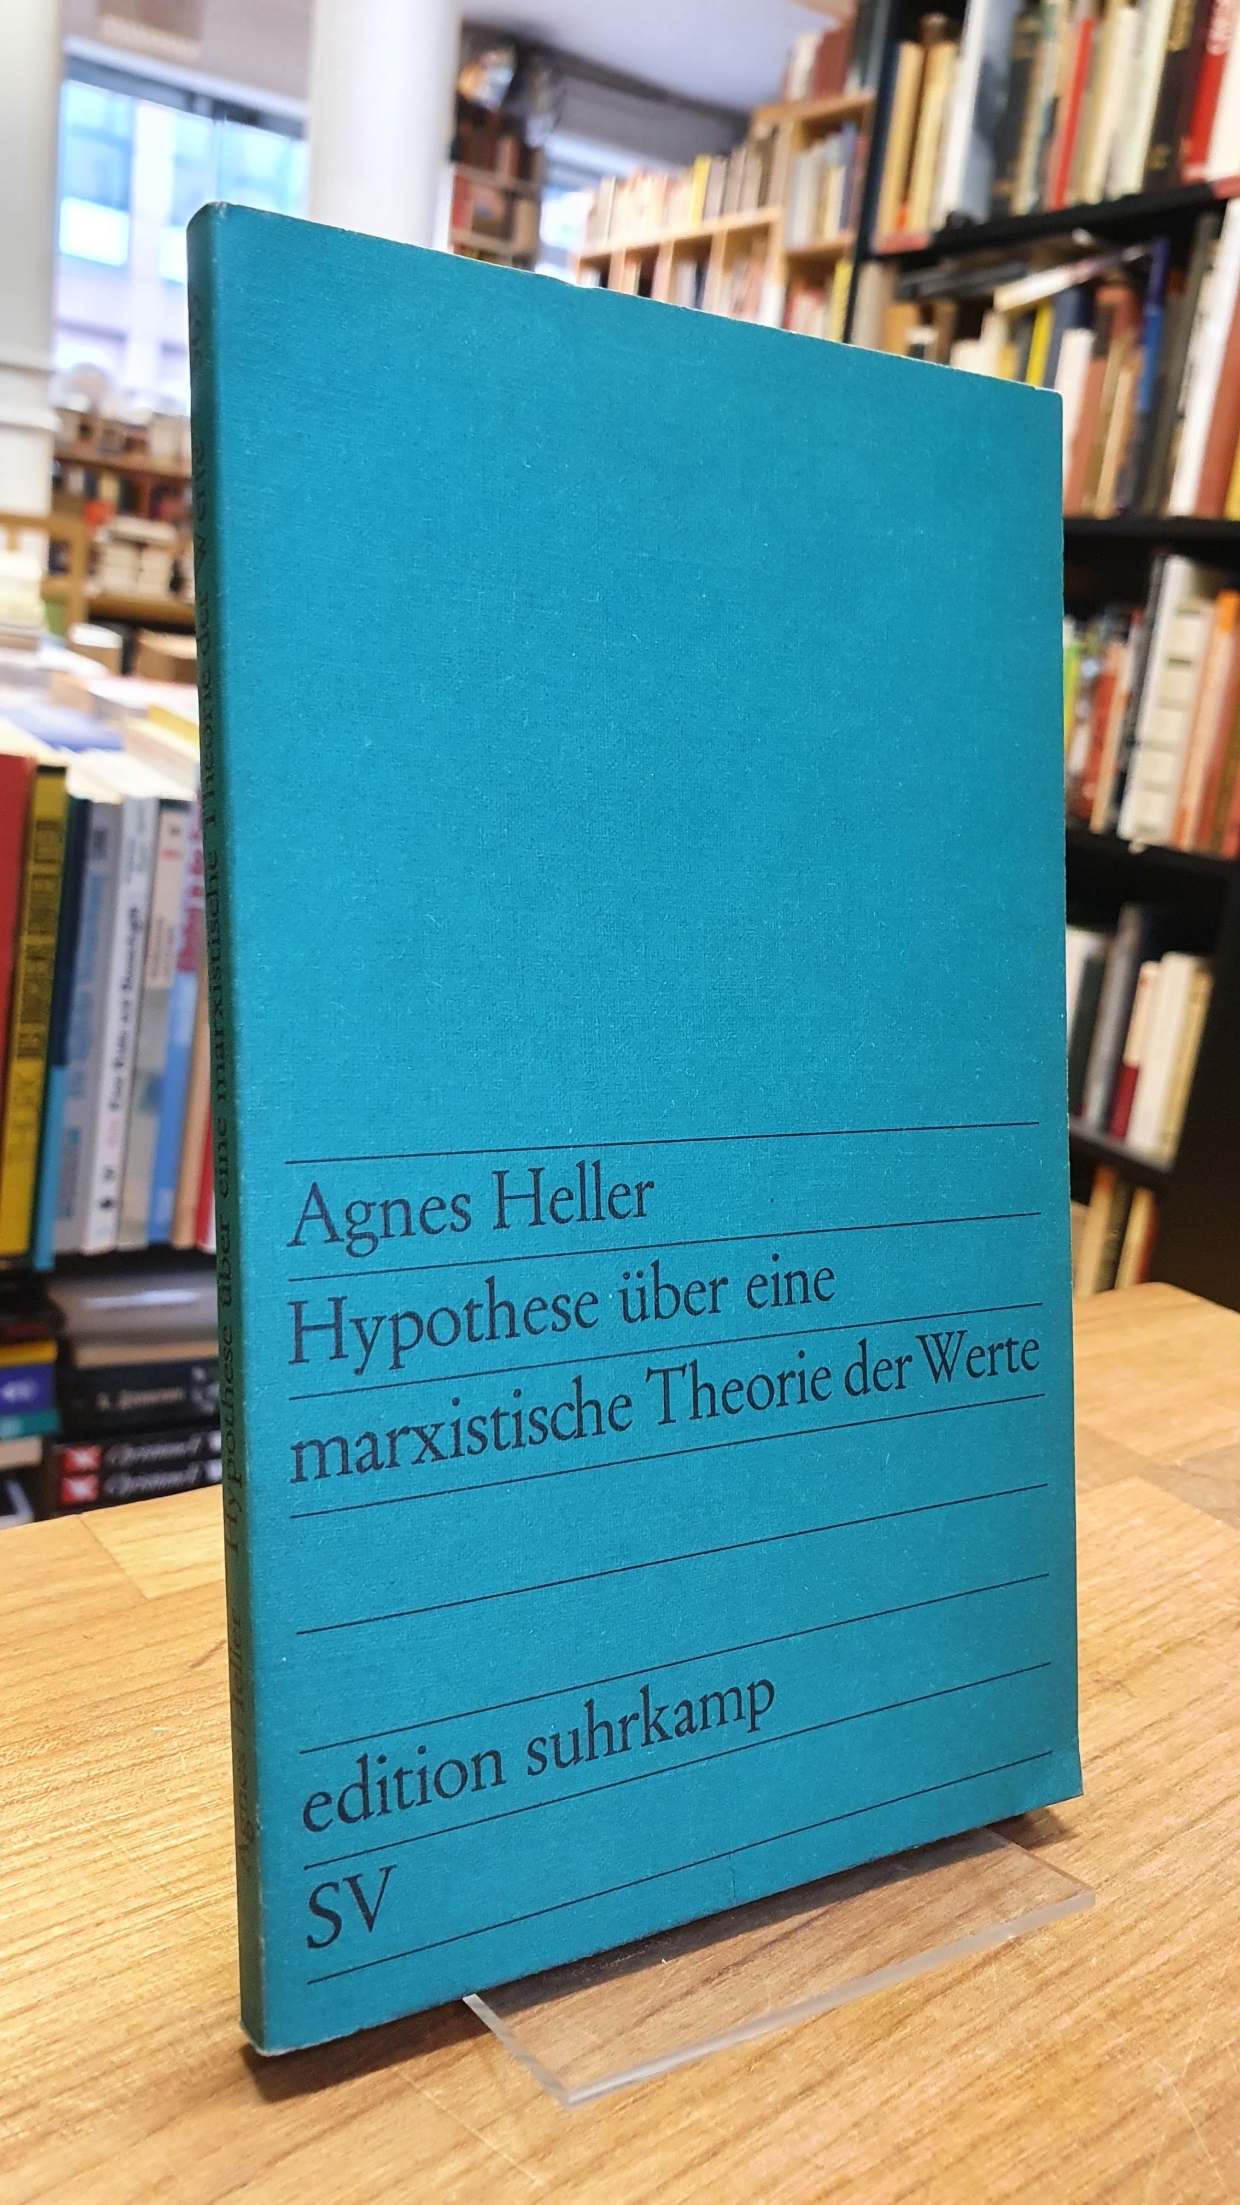 Heller, Hypothese über eine marxistische Theorie der Werte,